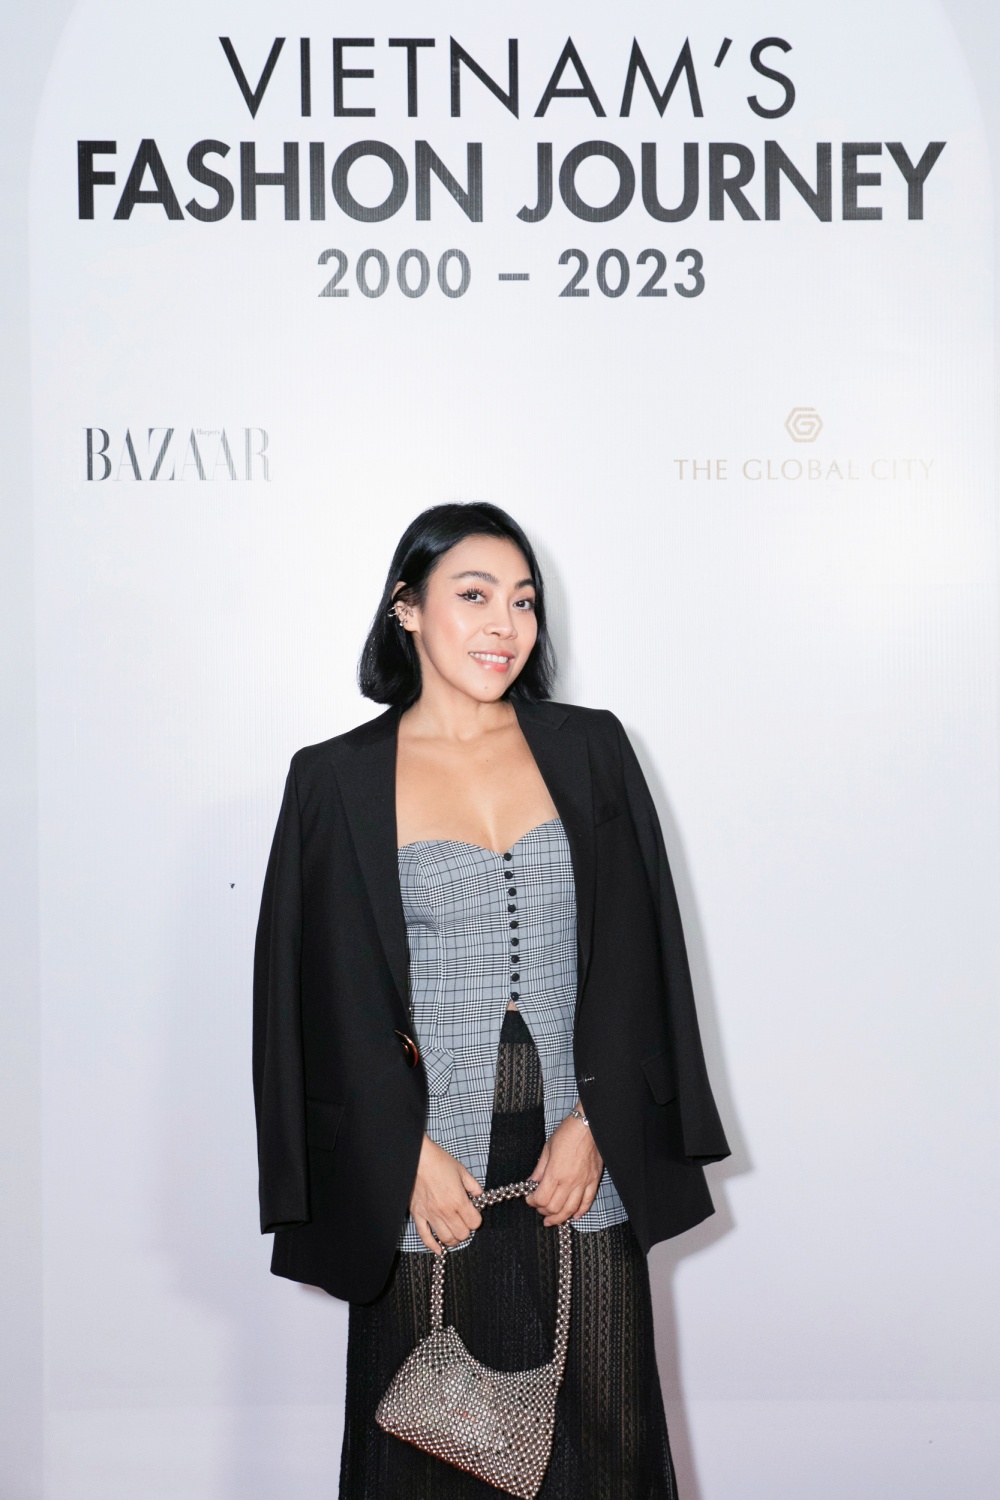 Chân dung NTK Jennu Kim tại đêm Gala khai mạc triển lãm Vietnam's Fashion Jourrney 2000–2023 do Harper's Bazaar Việt Nam tổ chức. Ảnh: Kiếng Cận team.